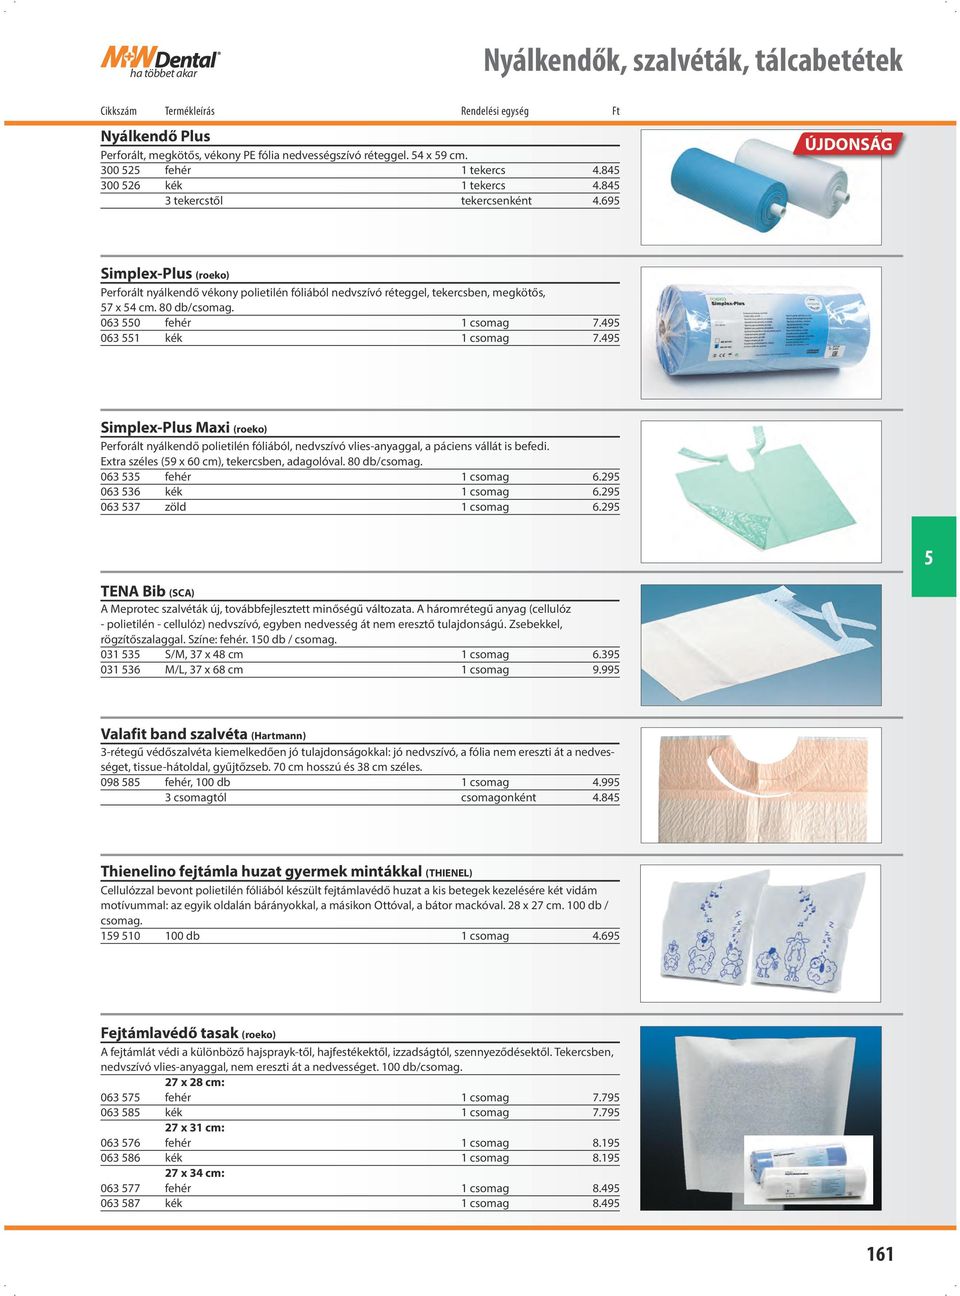 49 063 1 kék 1 csomag 7.49 Simplex-Plus Maxi (roeko) Perforált nyálkendő polietilén fóliából, nedvszívó vlies-anyaggal, a páciens vállát is befedi. Extra széles (9 x 60 cm), tekercsben, adagolóval.